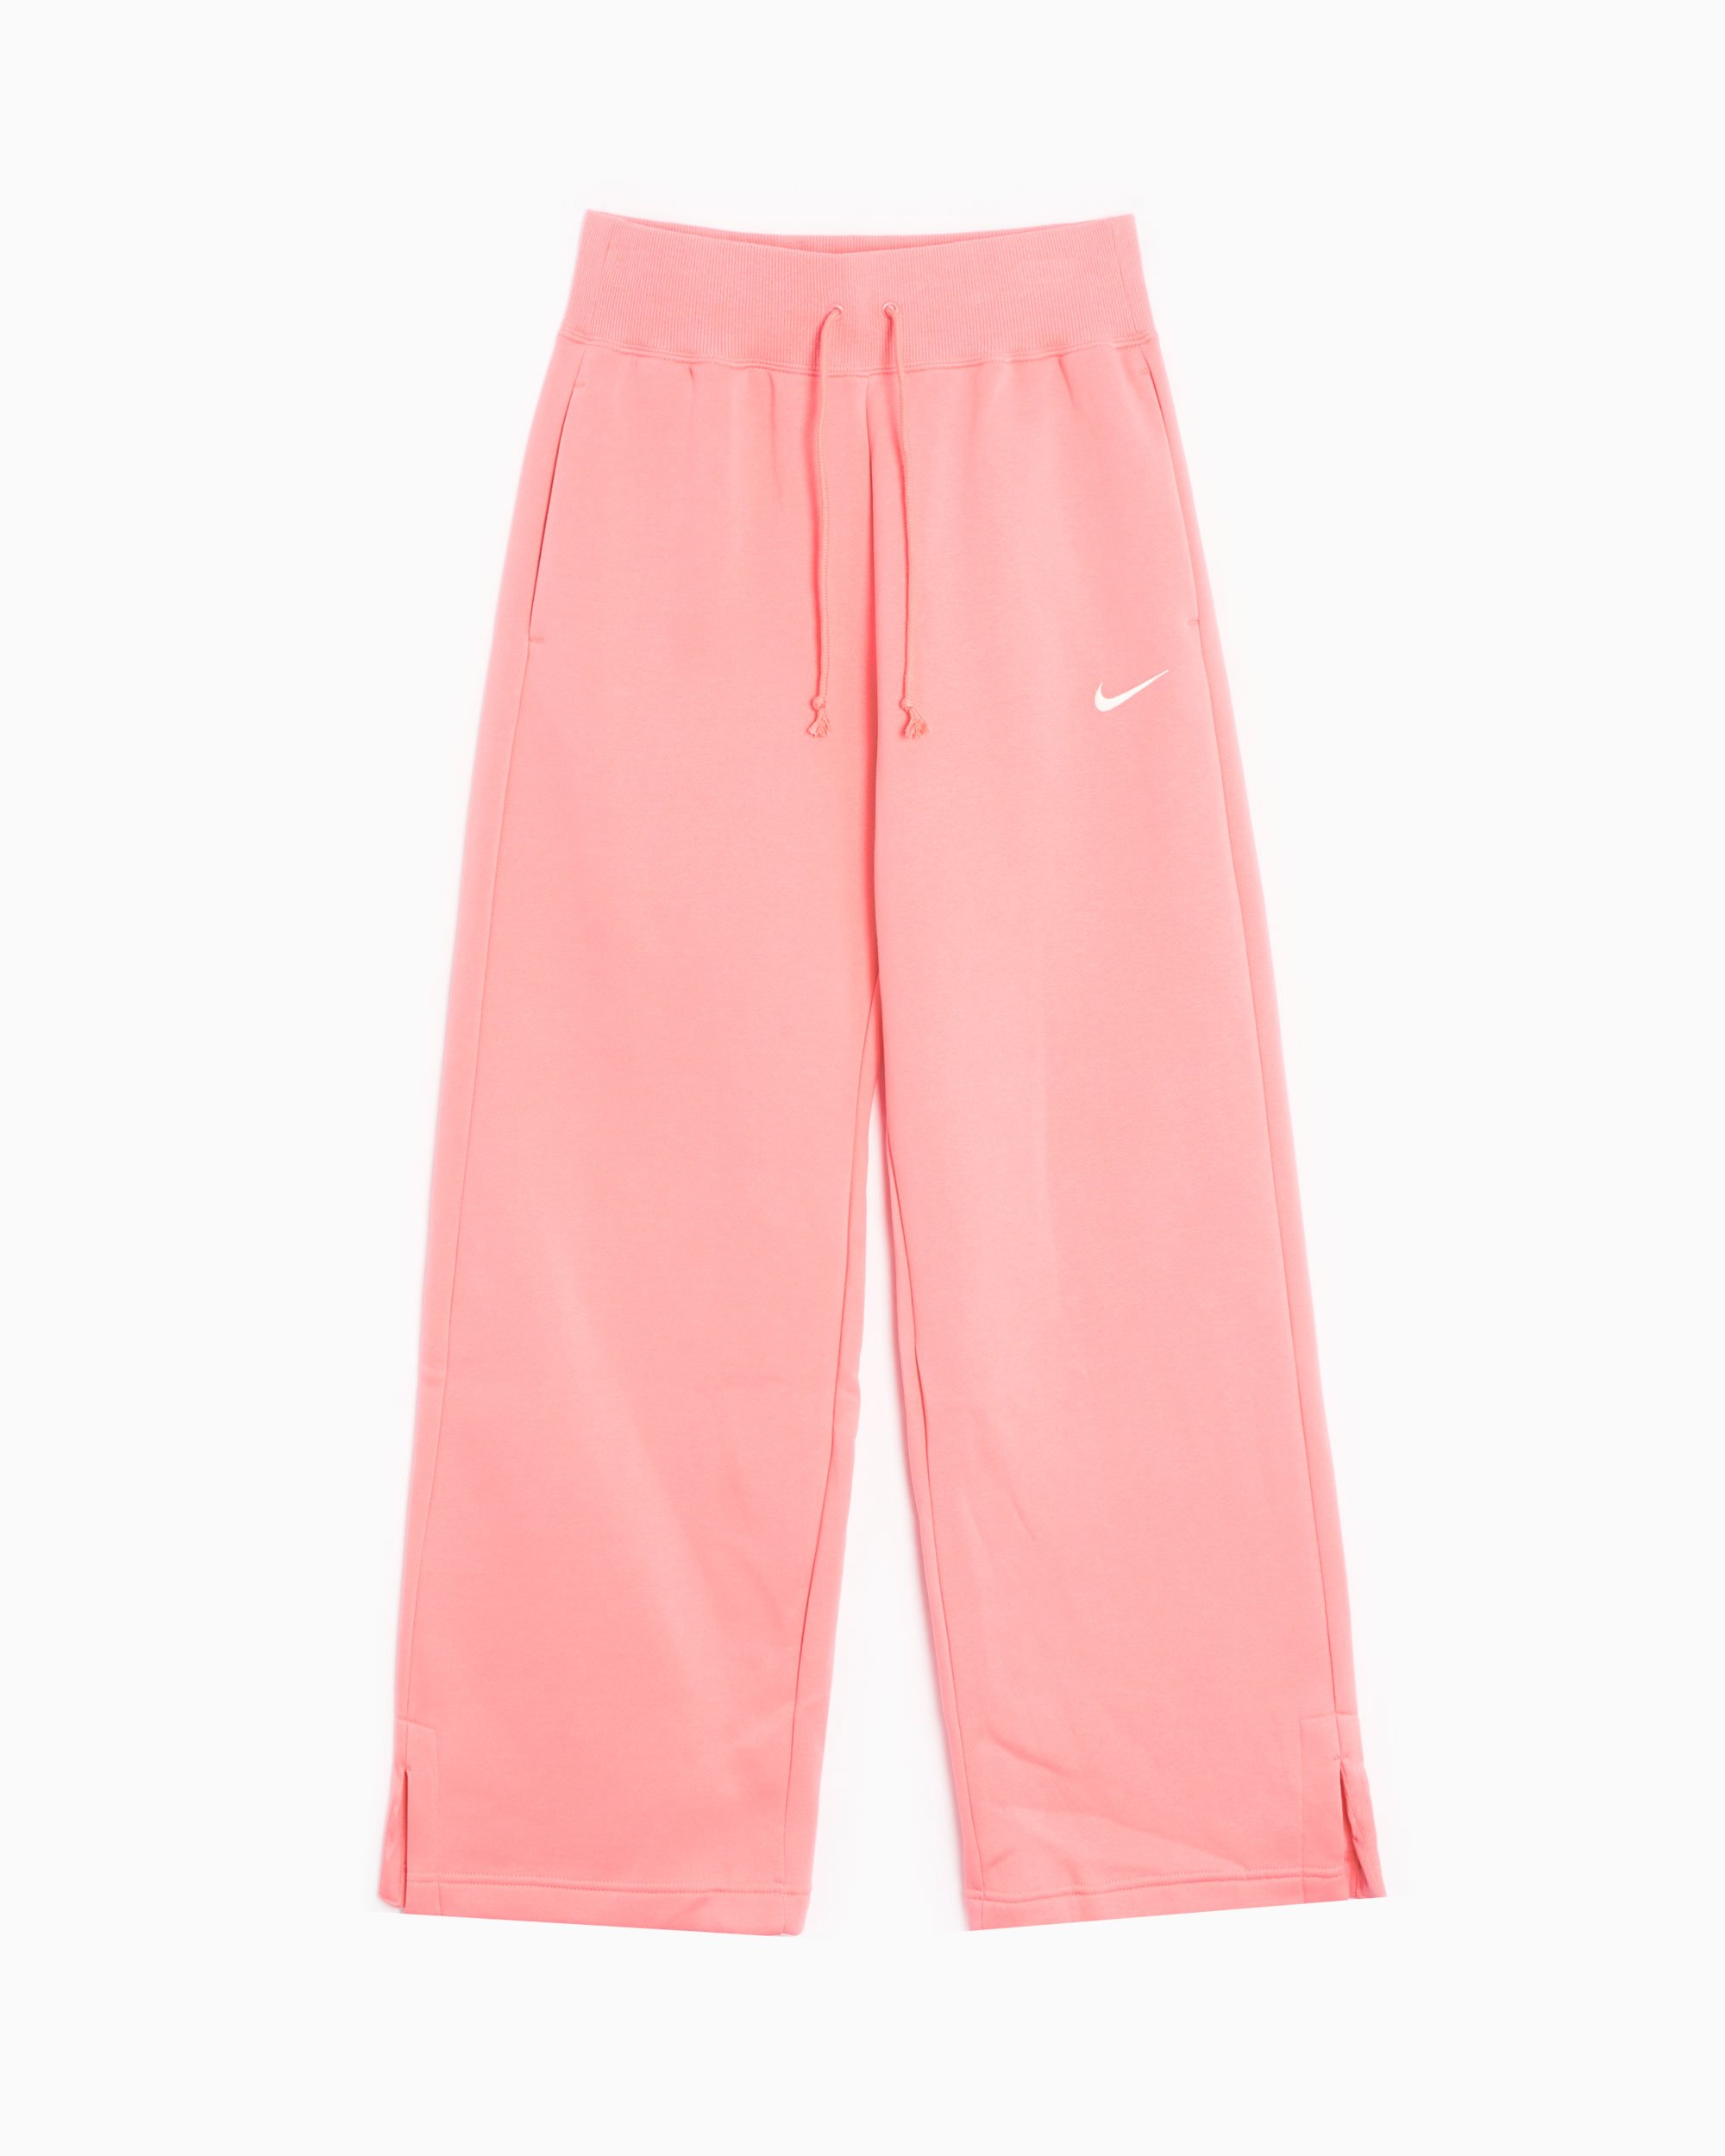 Nike Sportswear Phoenix Women's Wide Leg Fleece Pants Pink DQ5615-611